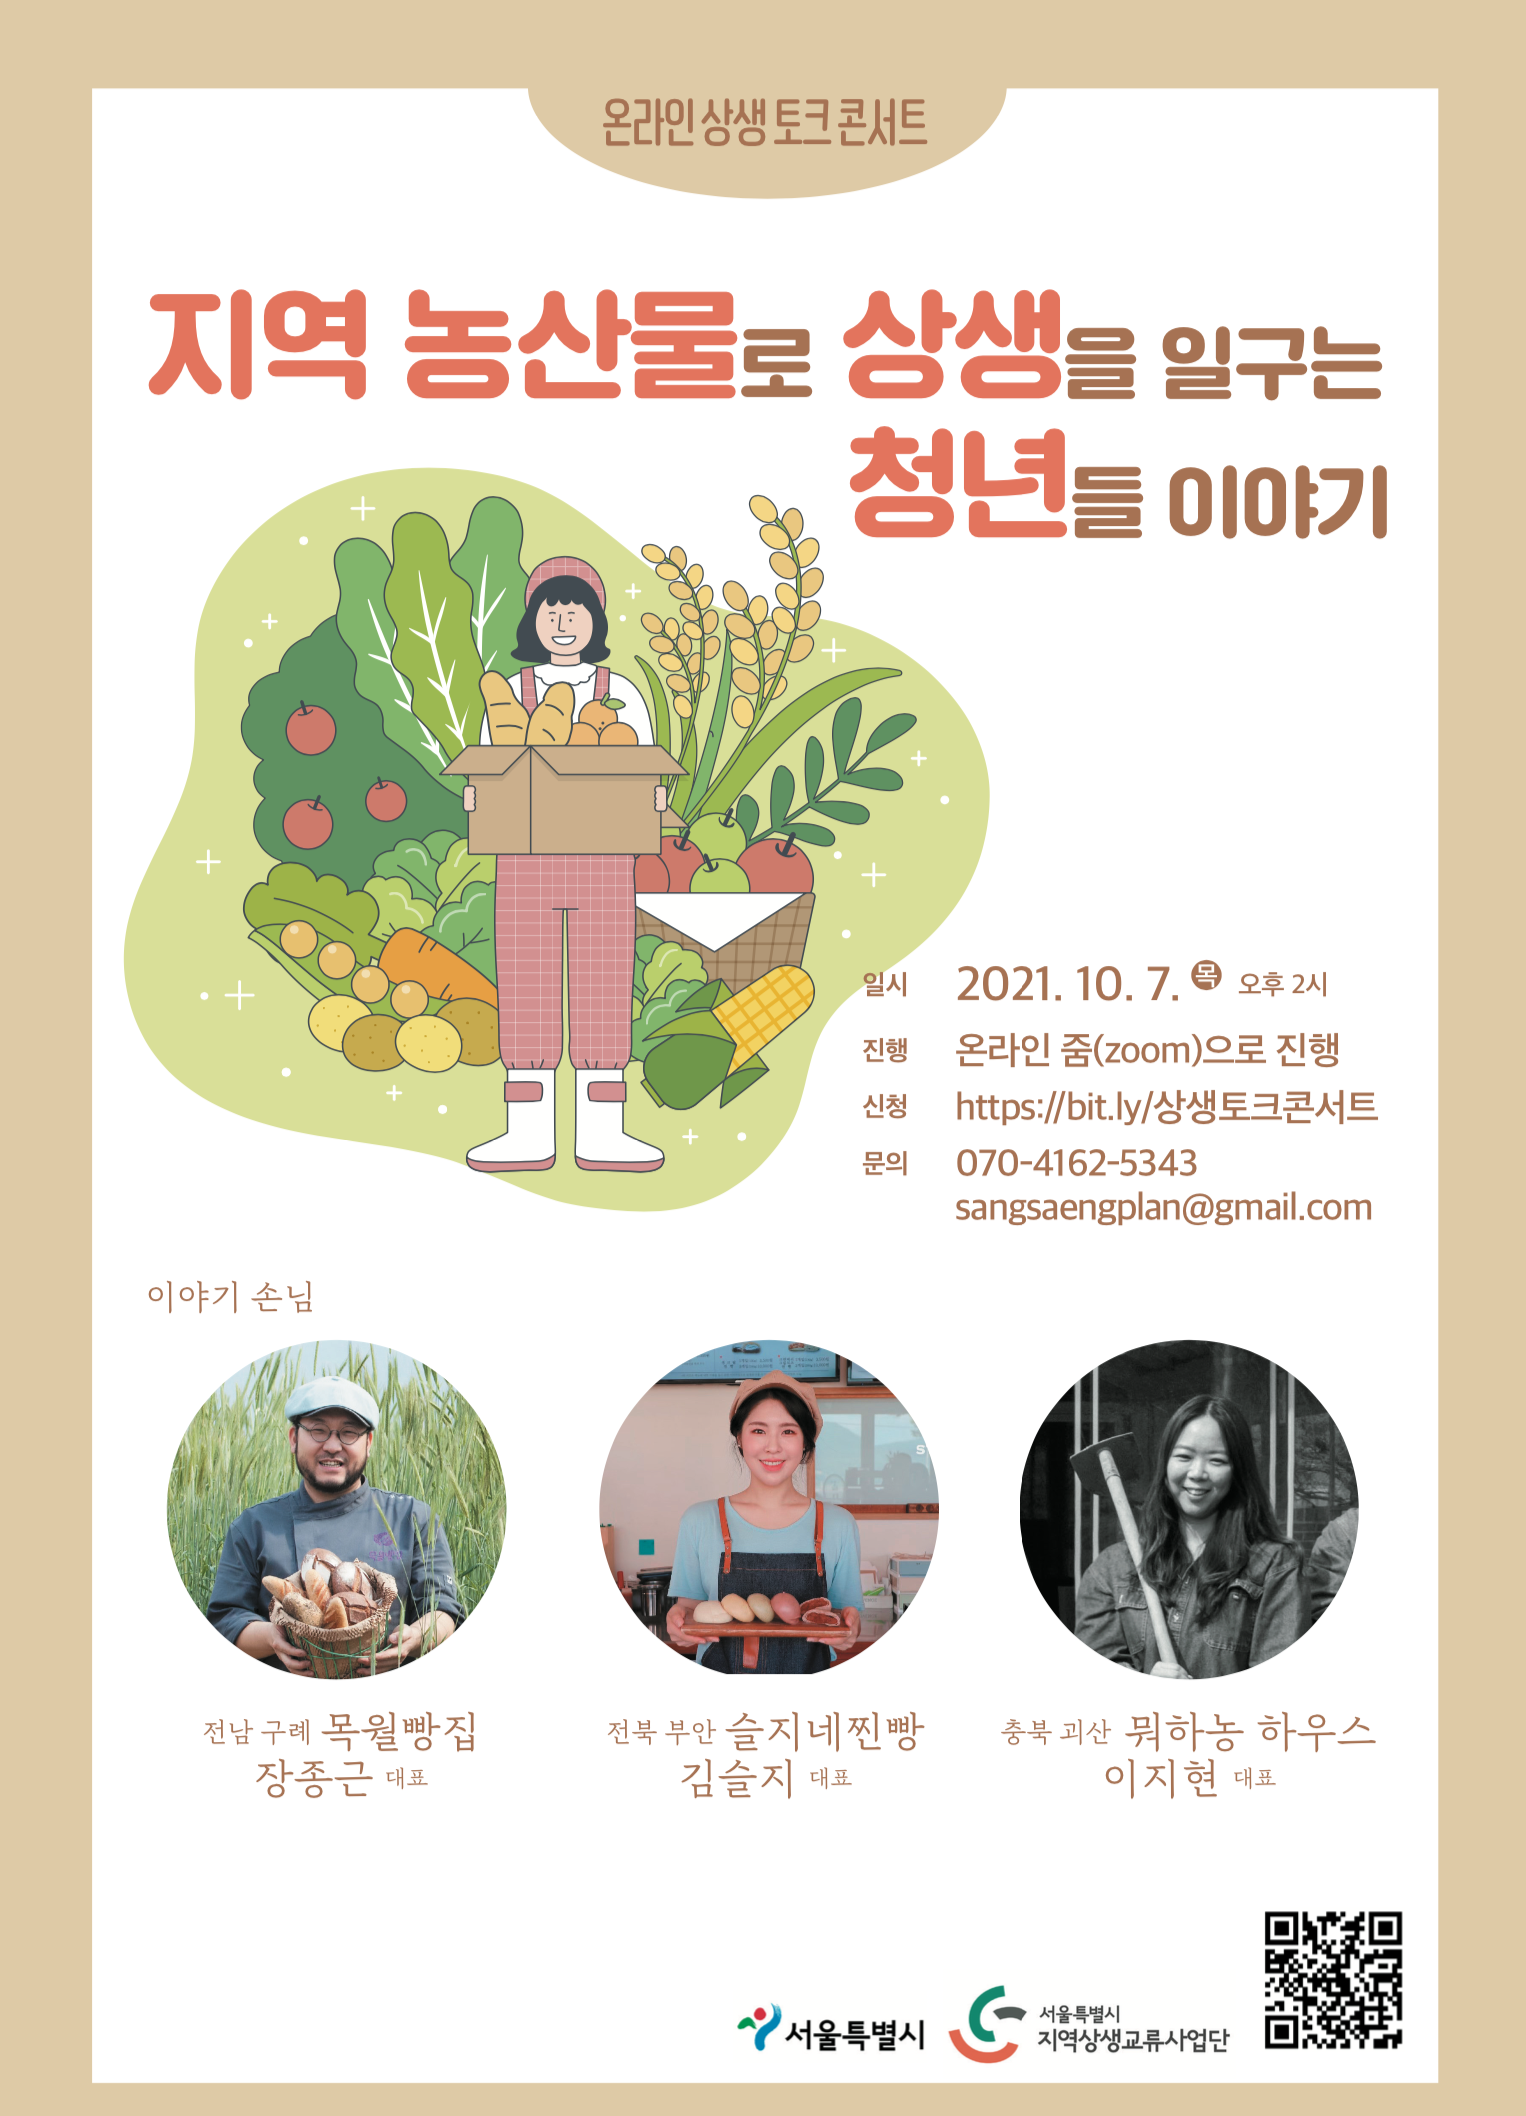 온라인 상생 토크 콘서트. 지역 농산물로 상생을 일구는 청년들 포스터